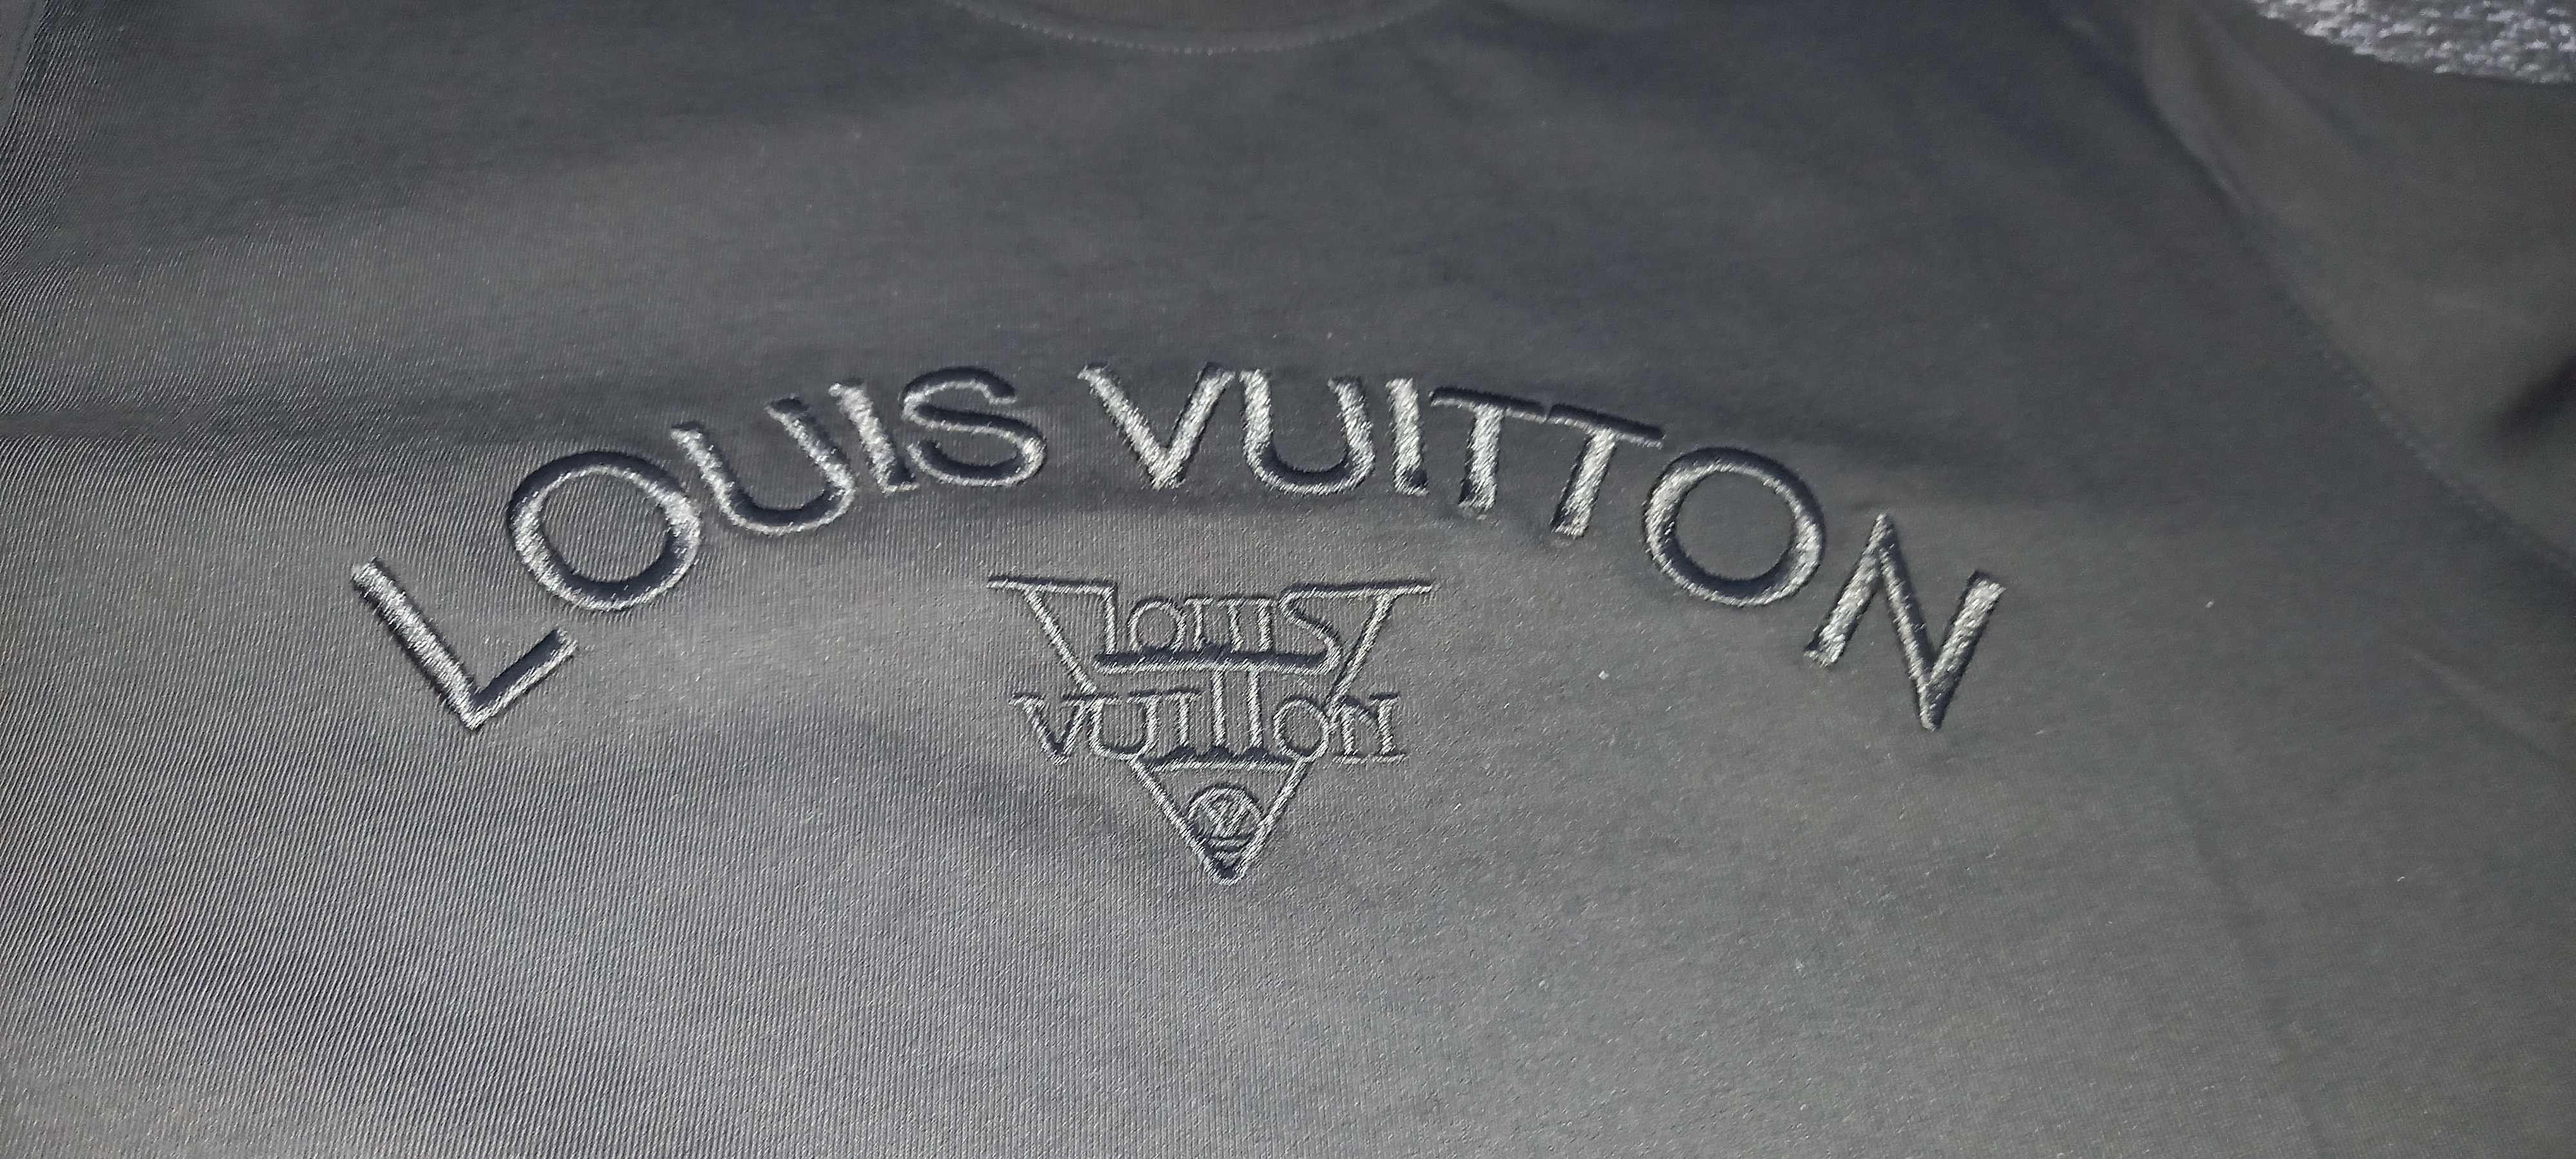 Louis Vuitton nowa, metki, kod